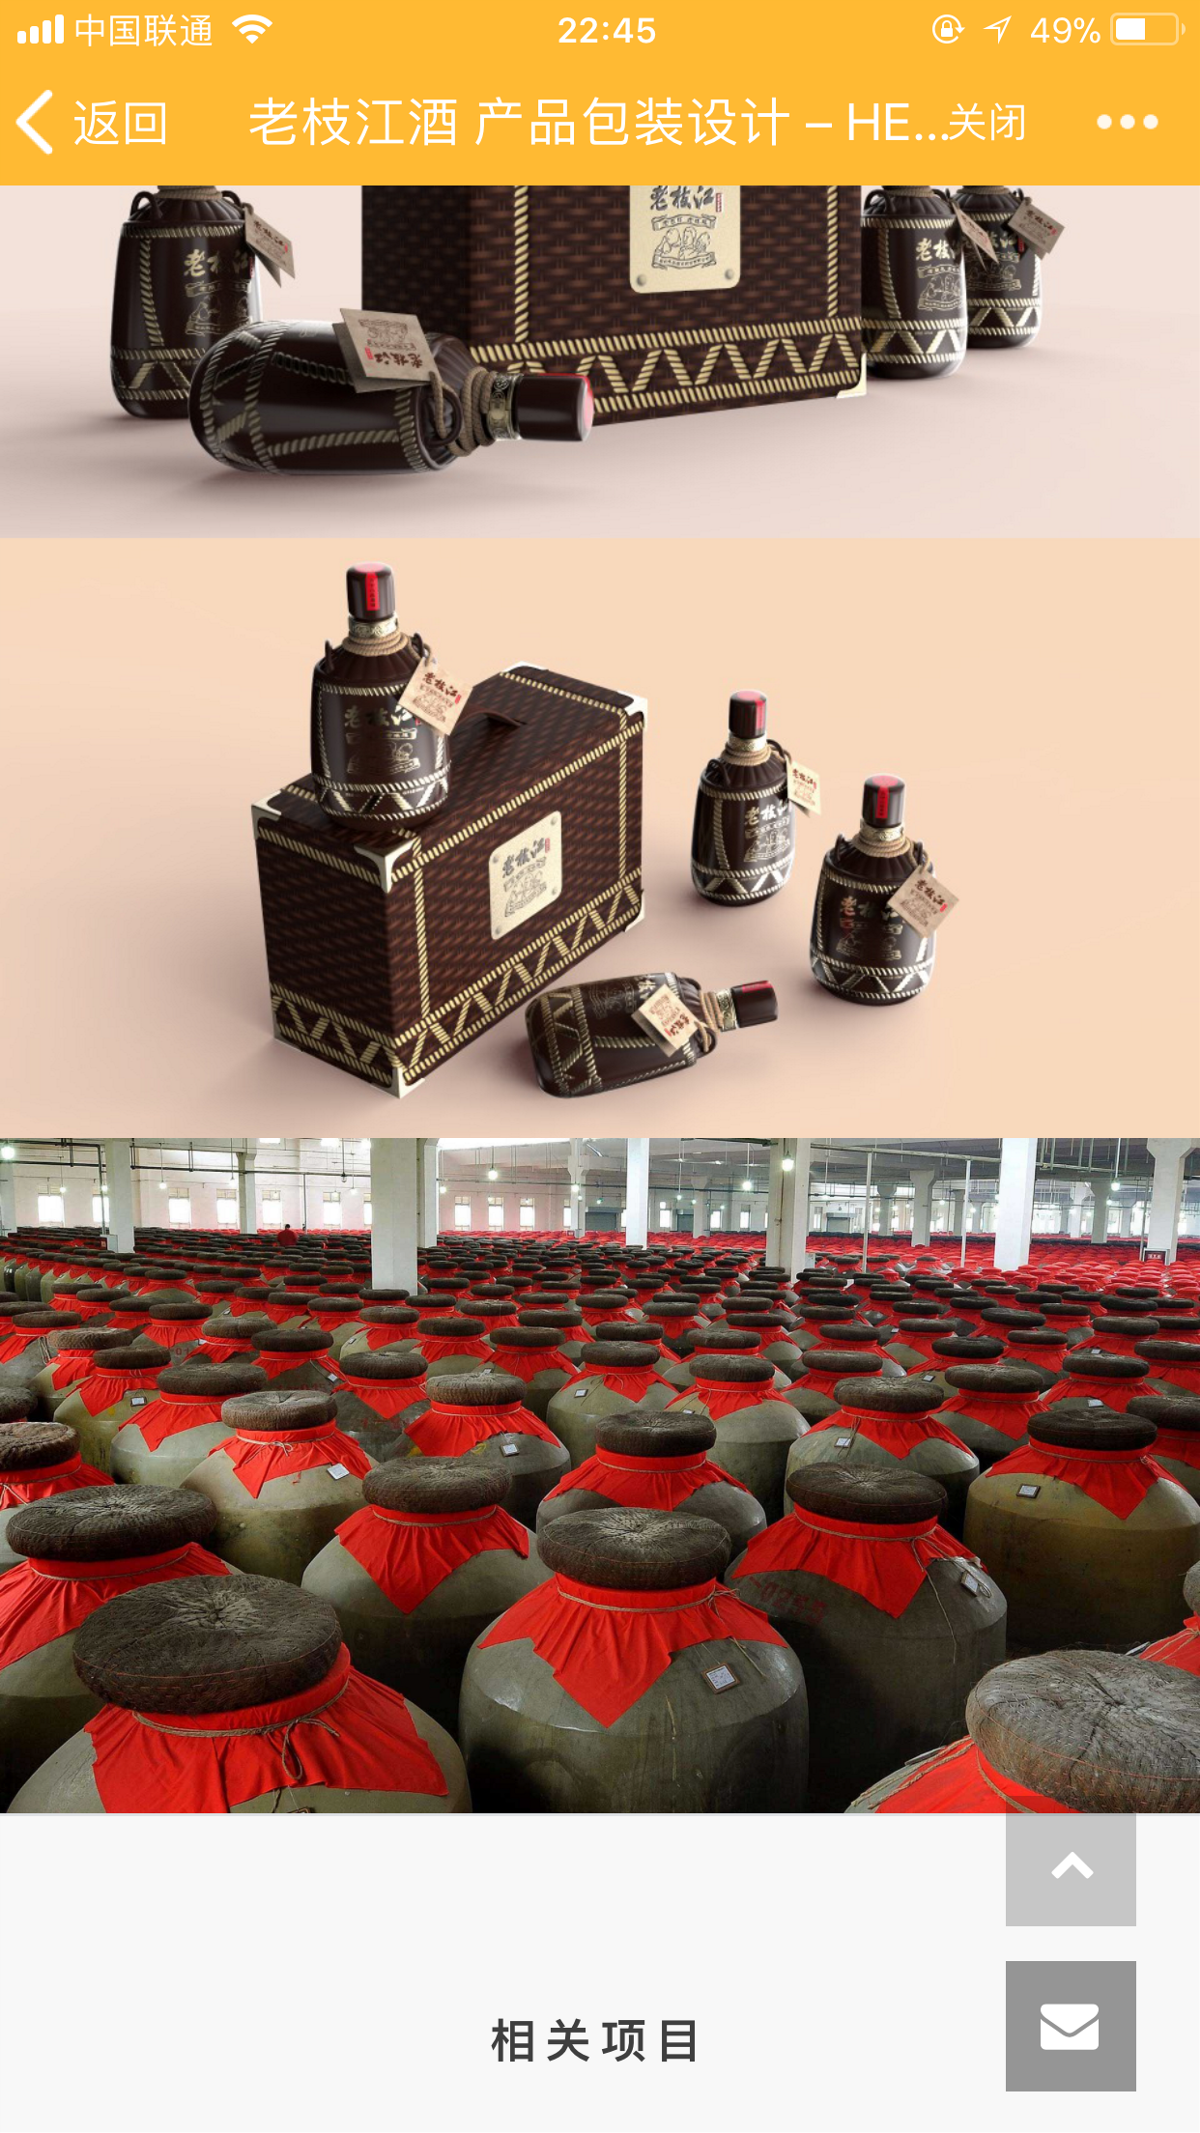 老枝江酒 产品设计 酒瓶设计 产品外观设计 酒水包装设计